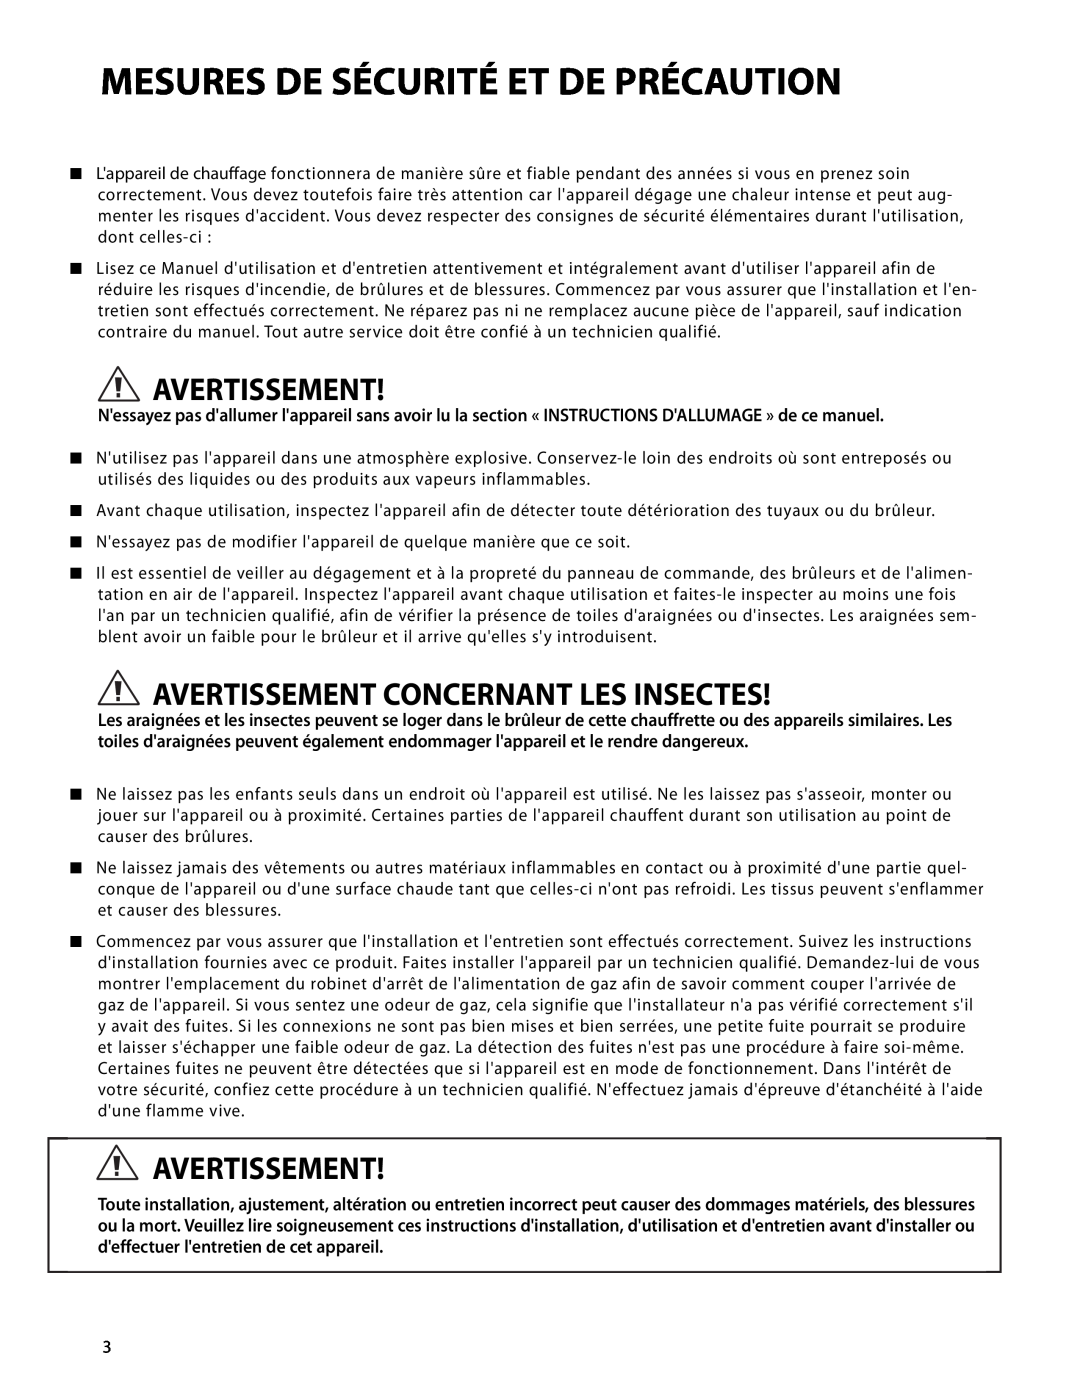 DCS DRH-48N manual Mesures De Sécurité Et De Précaution, Avertissement Concernant Les Insectes 